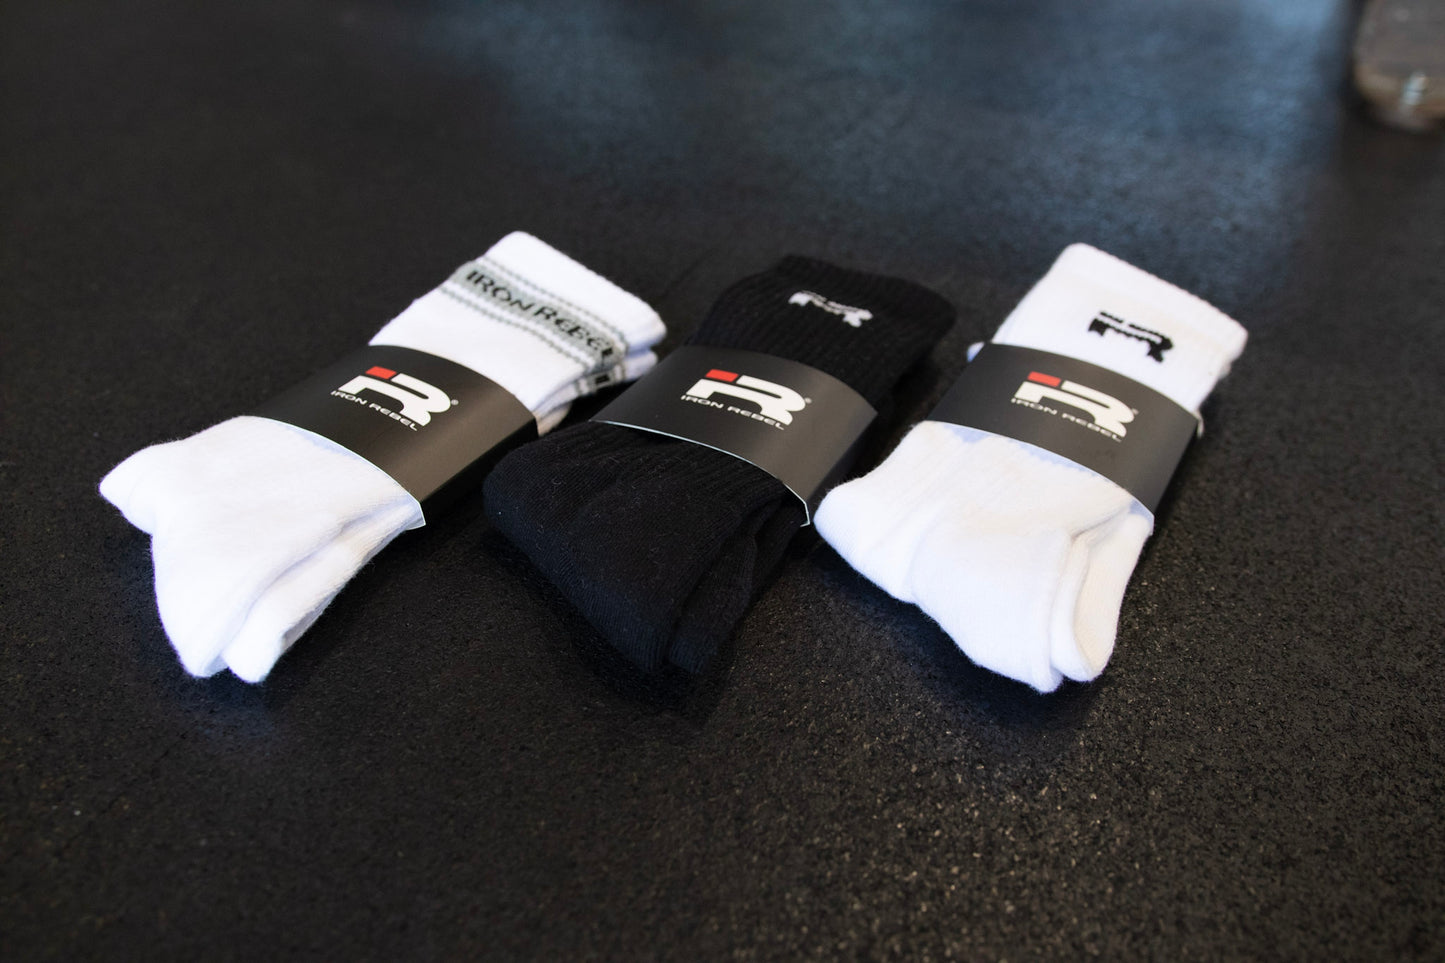 IR Logo Crew Socks (Black)